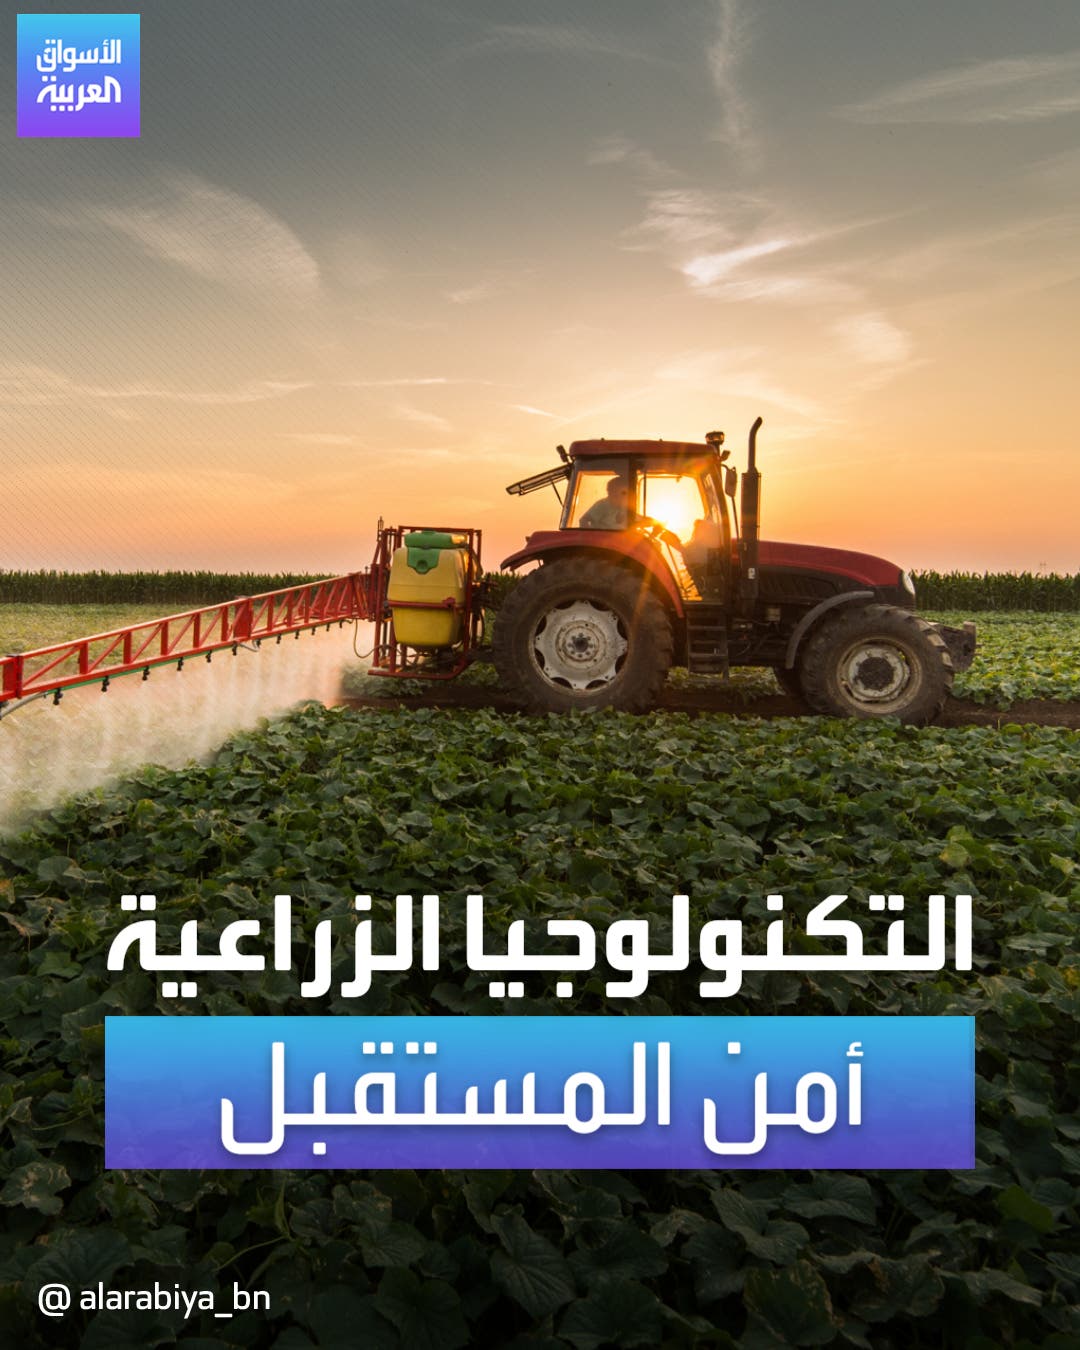 استثمارات الابتكار في التكنولوجيا الزراعية بالخليج تتزايد 